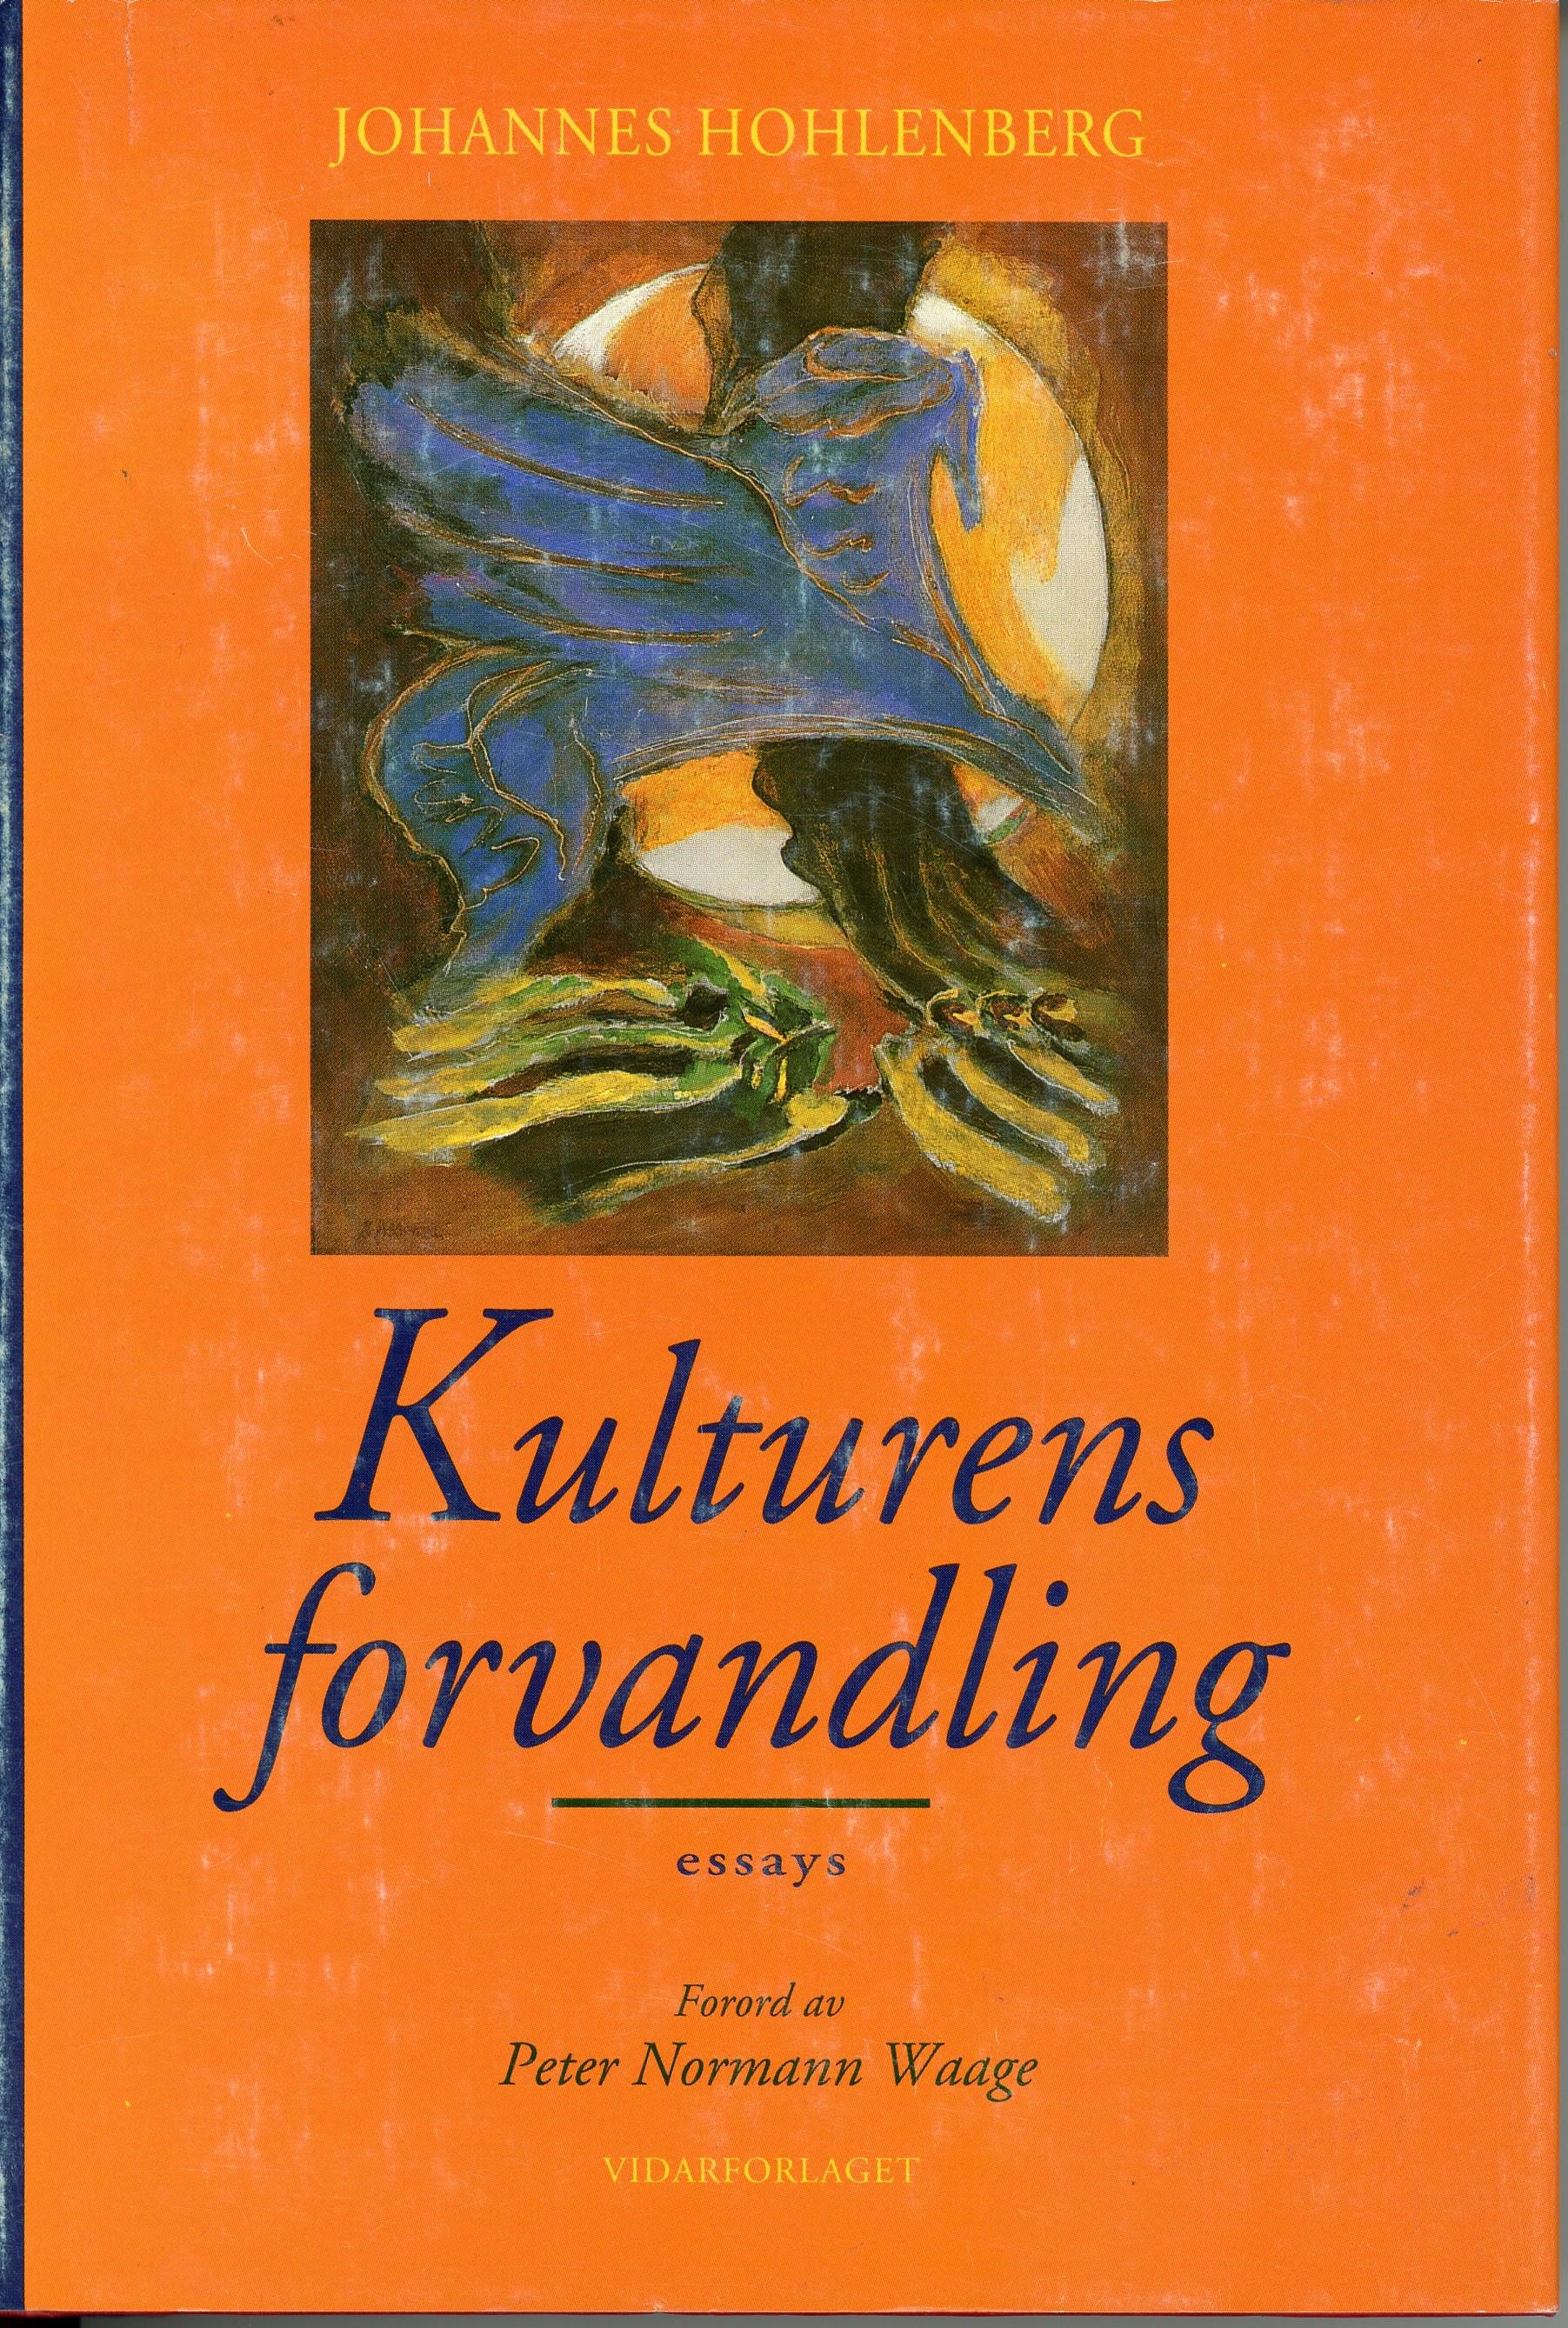 Kulturens forvandling: essays